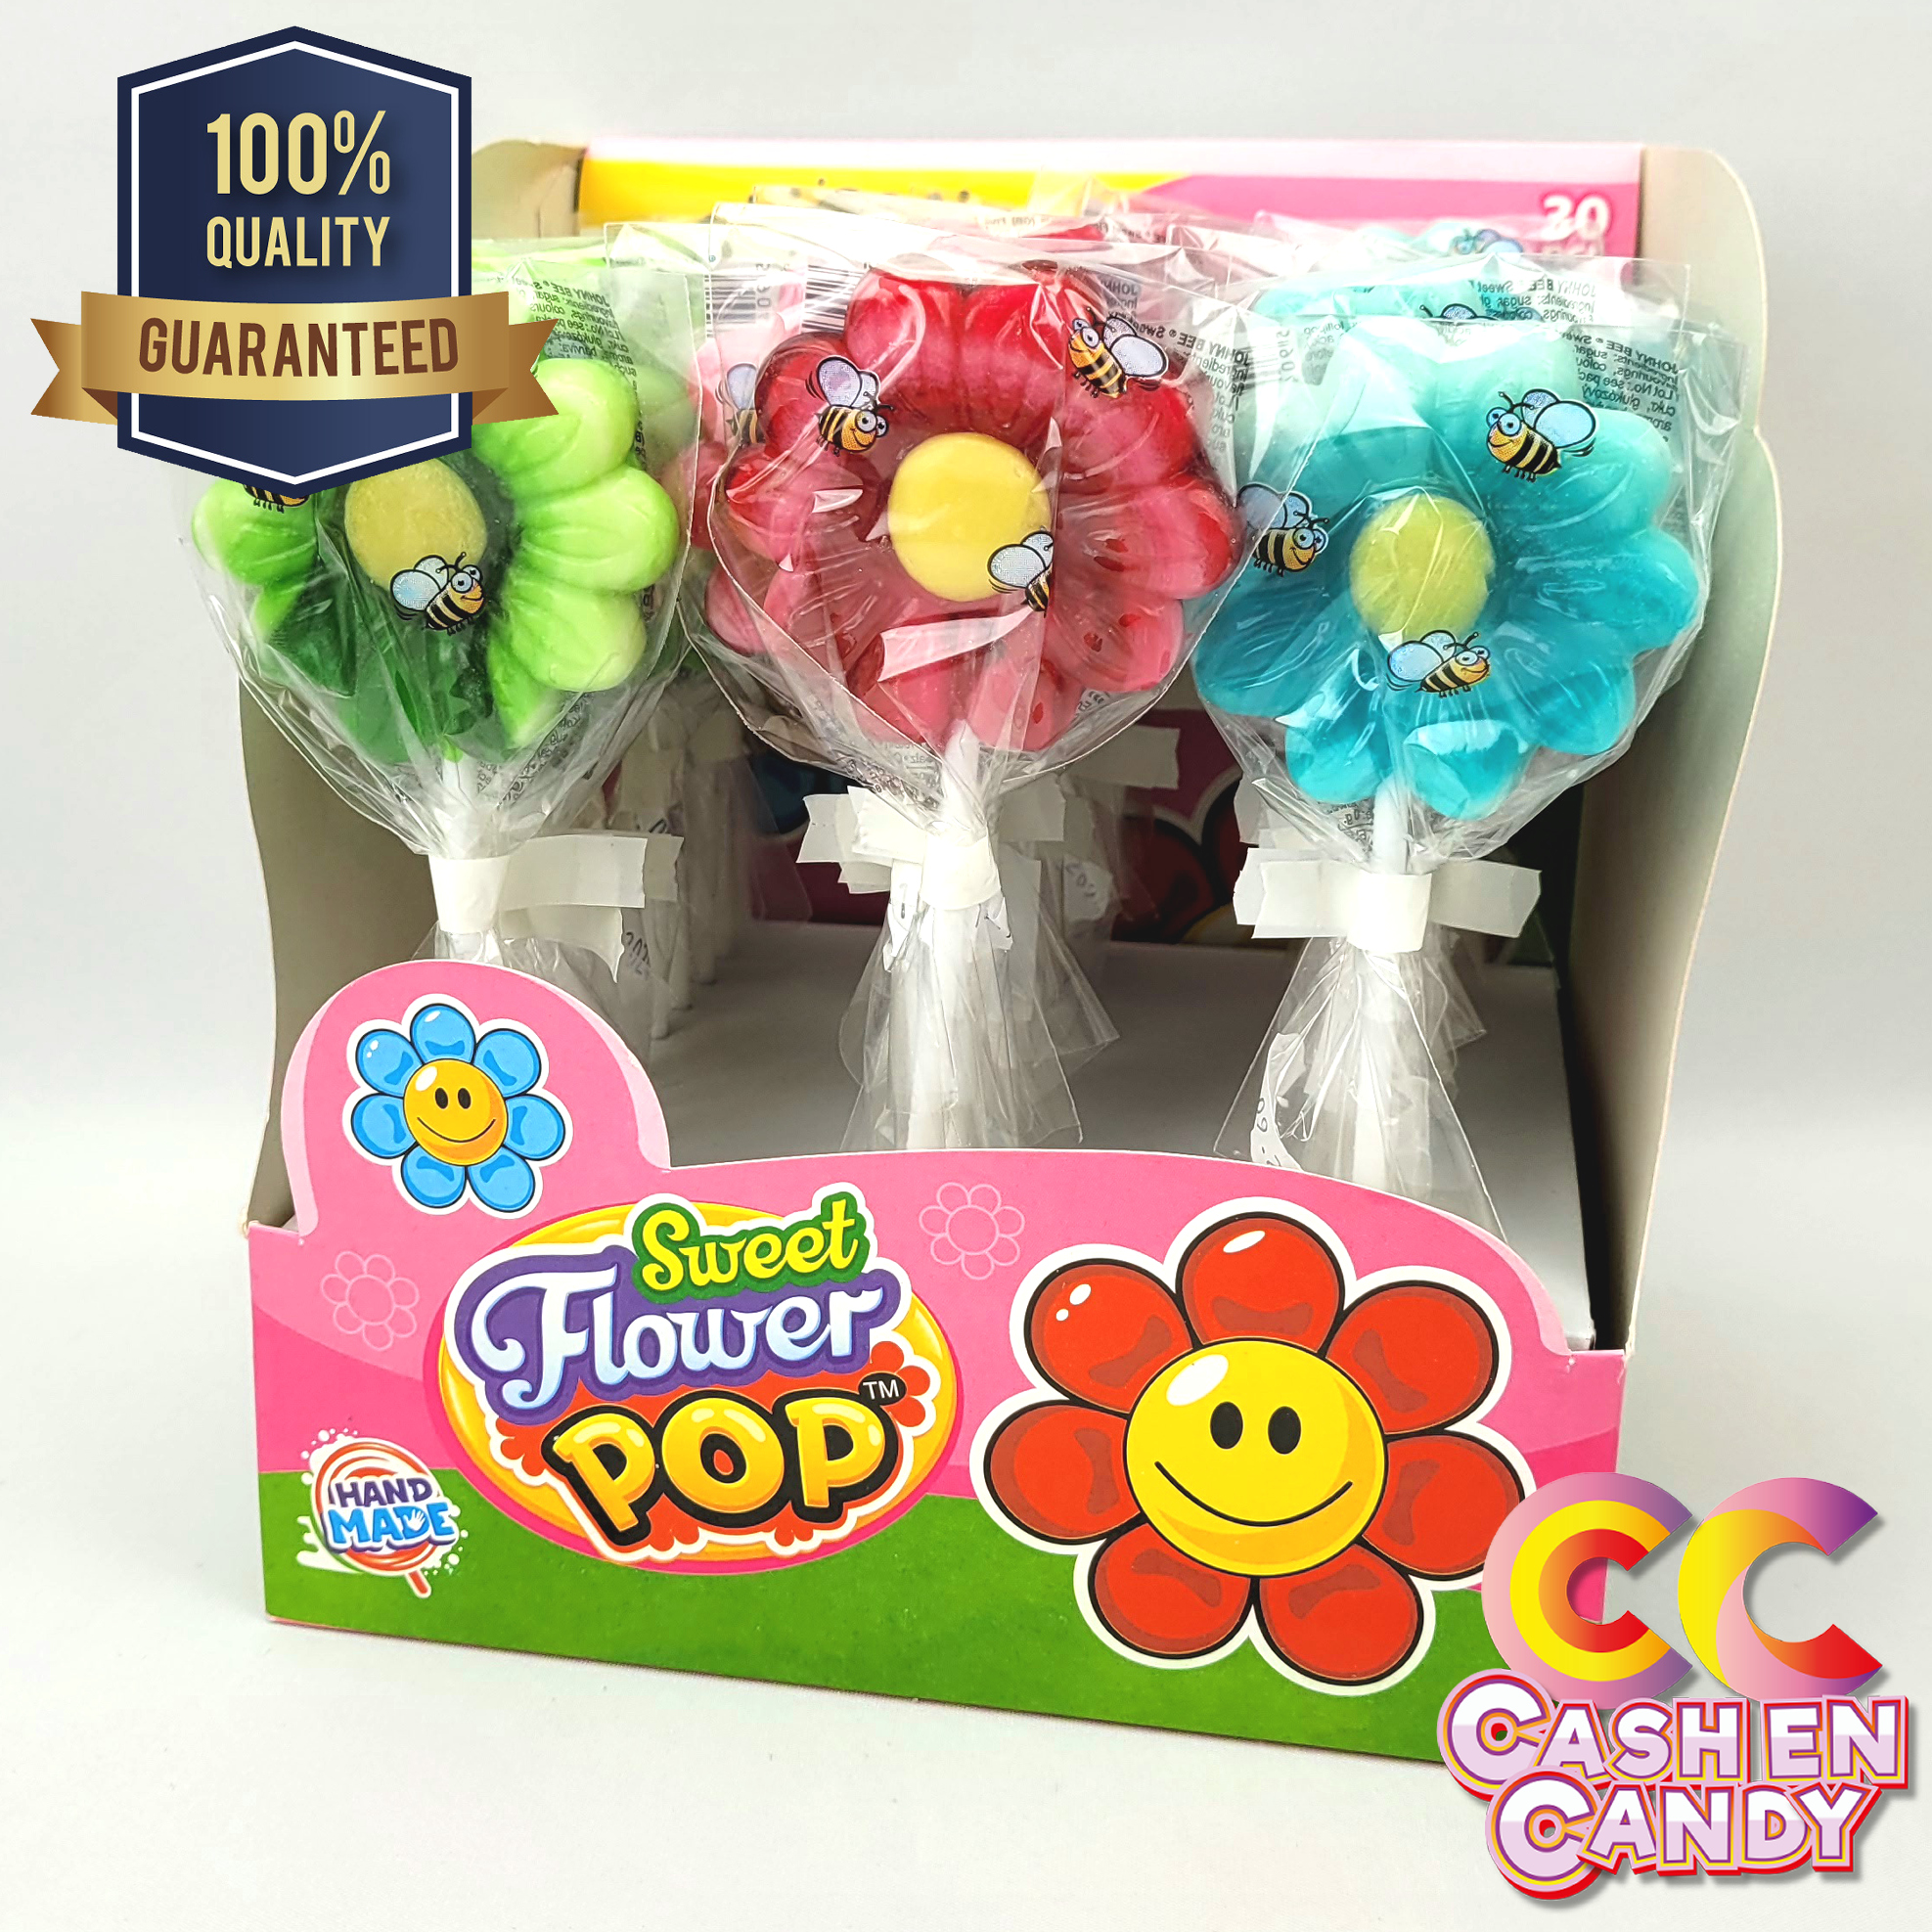 Sweet Flower Pop Cash en Candy